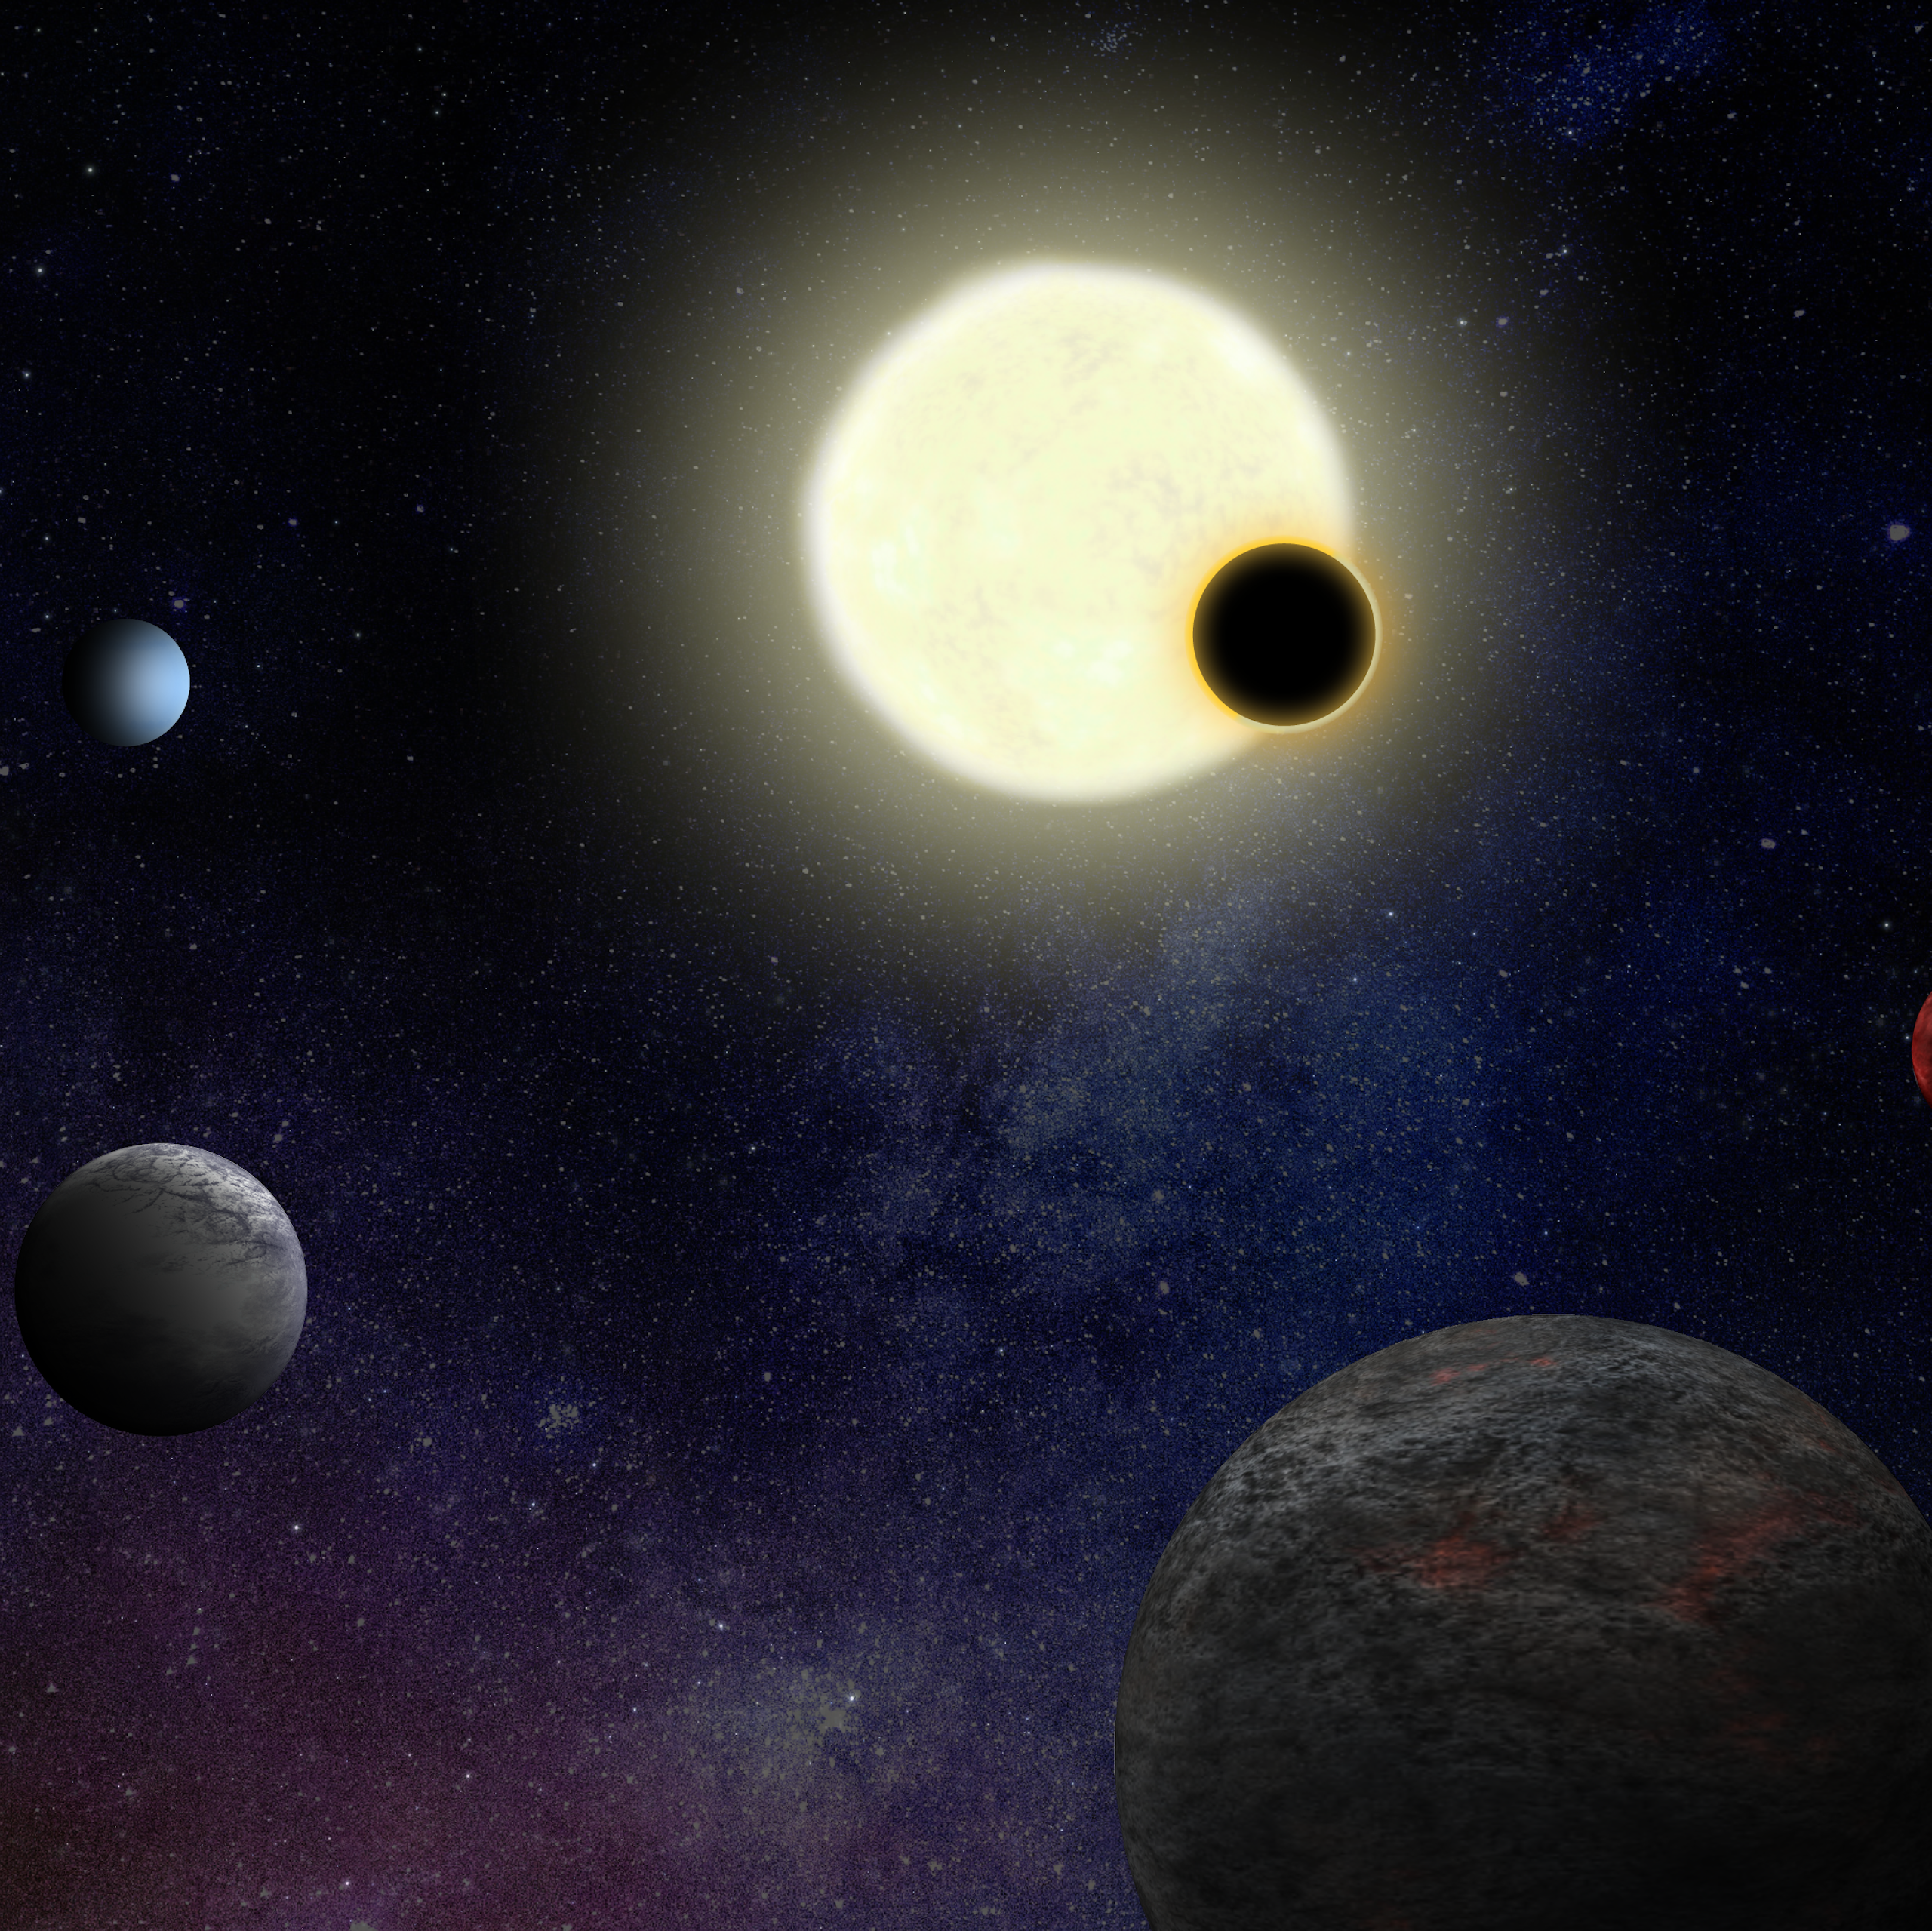 Vue d'artiste d'un système d'exoplanètes